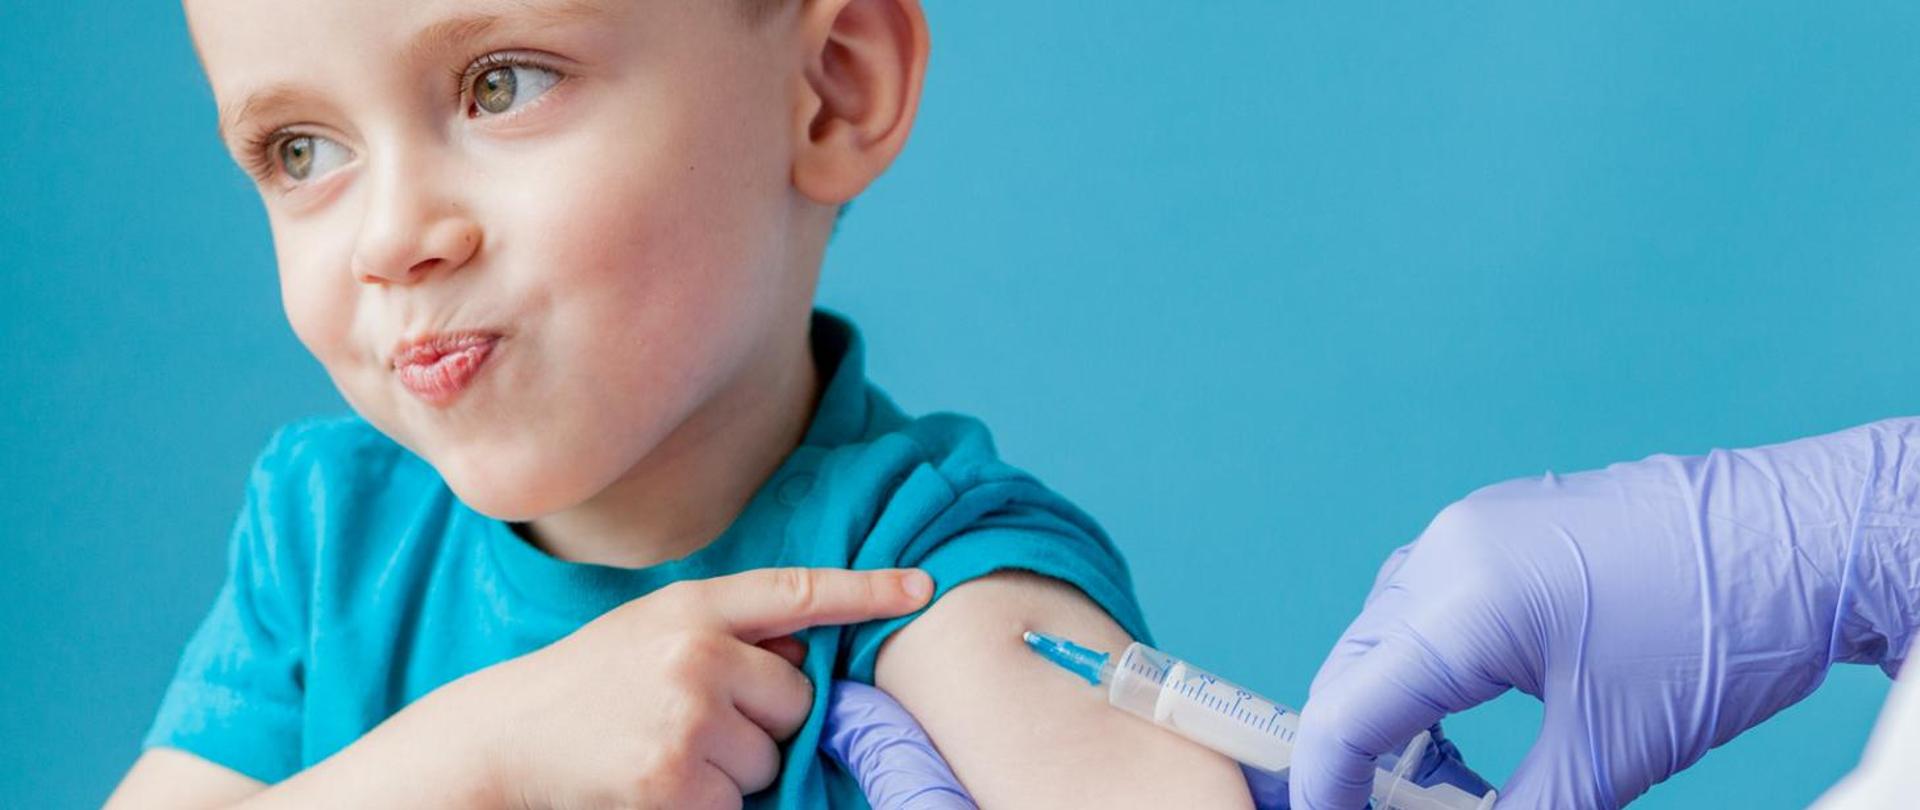 Zdjęcie małego chłopca, któremu podaje się szczepionkę w ramię